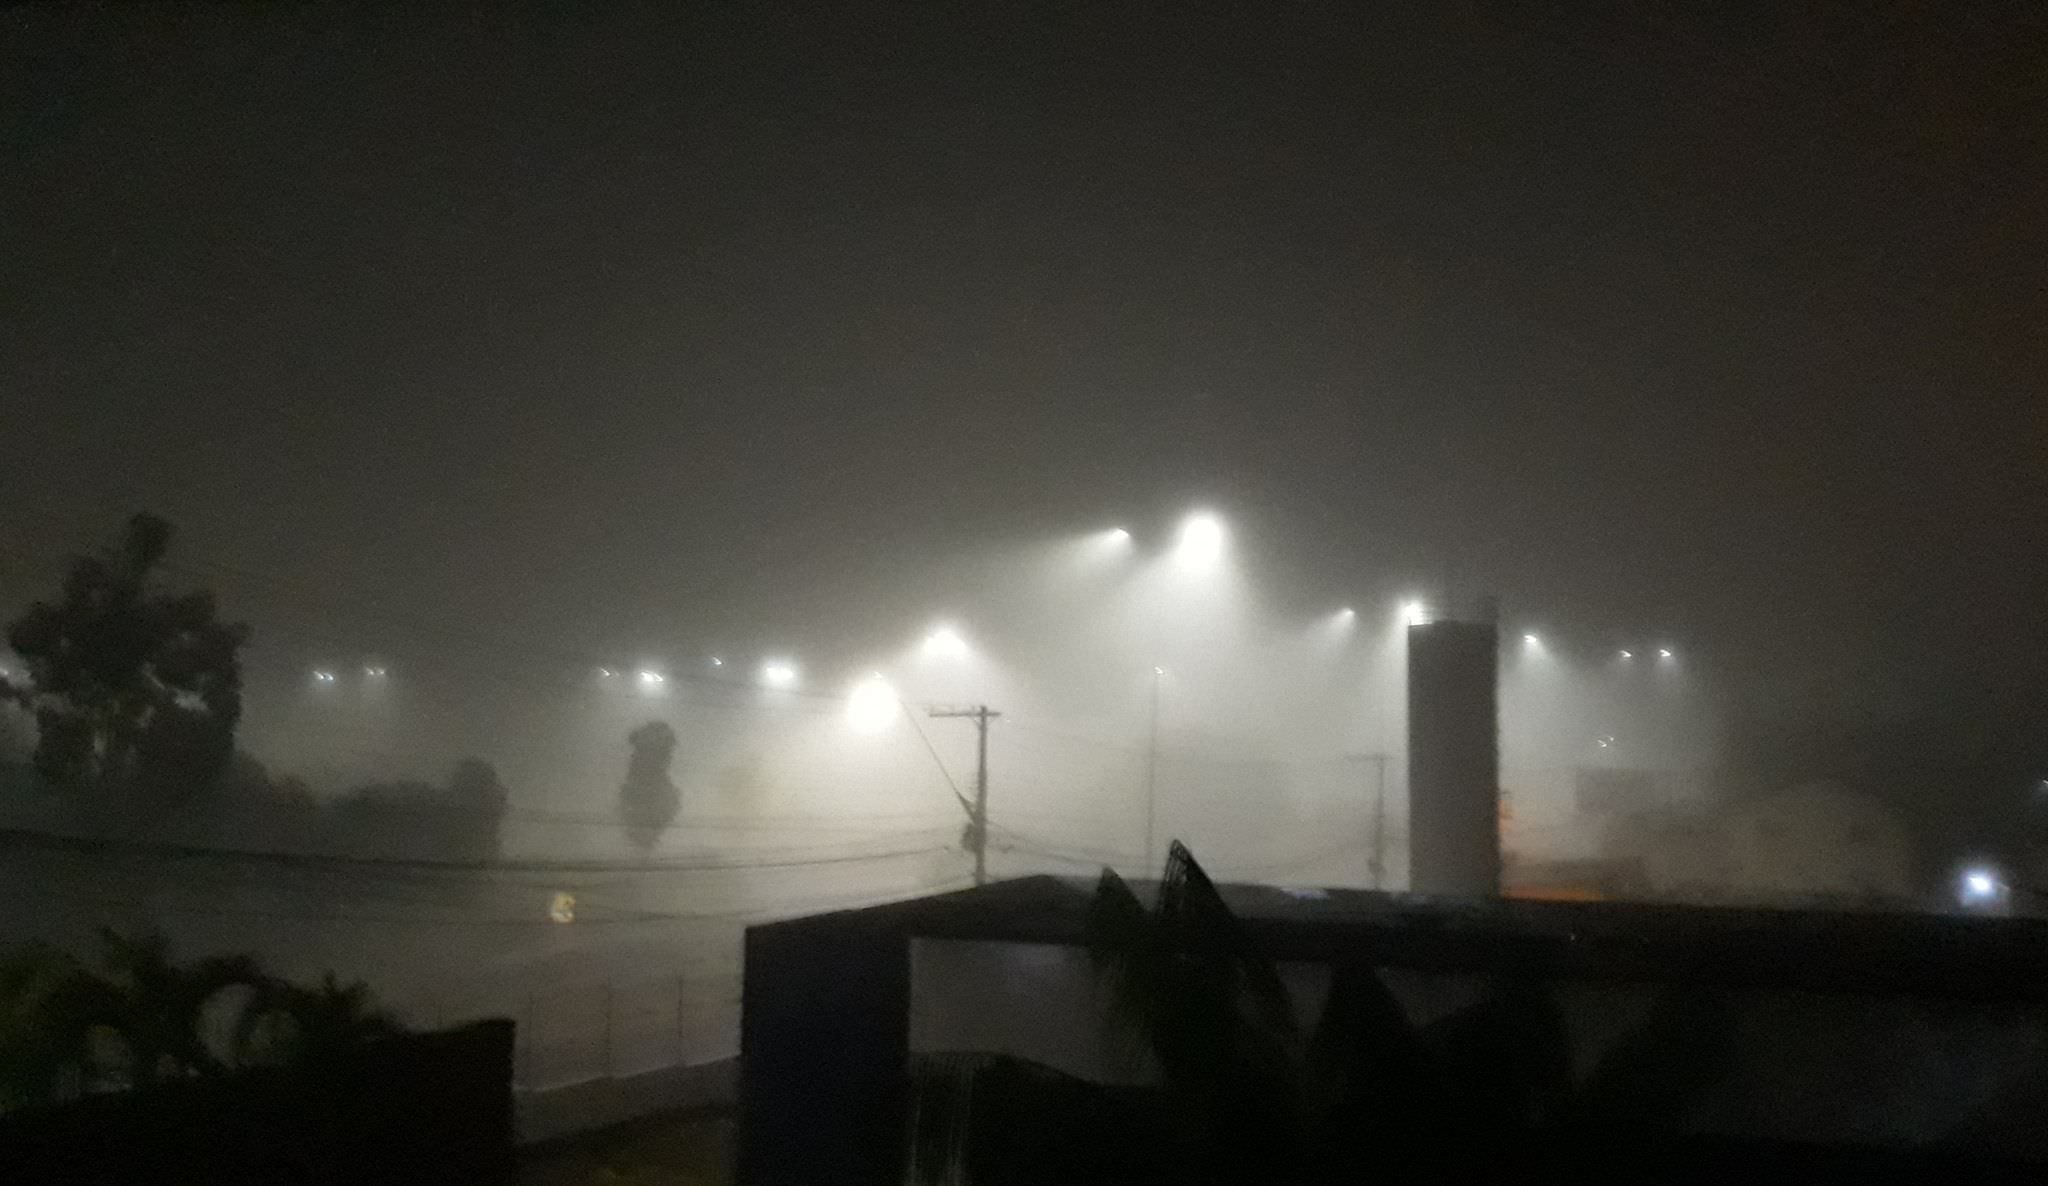 Forte neblina afeta voos em Manaus e prejudica trânsito